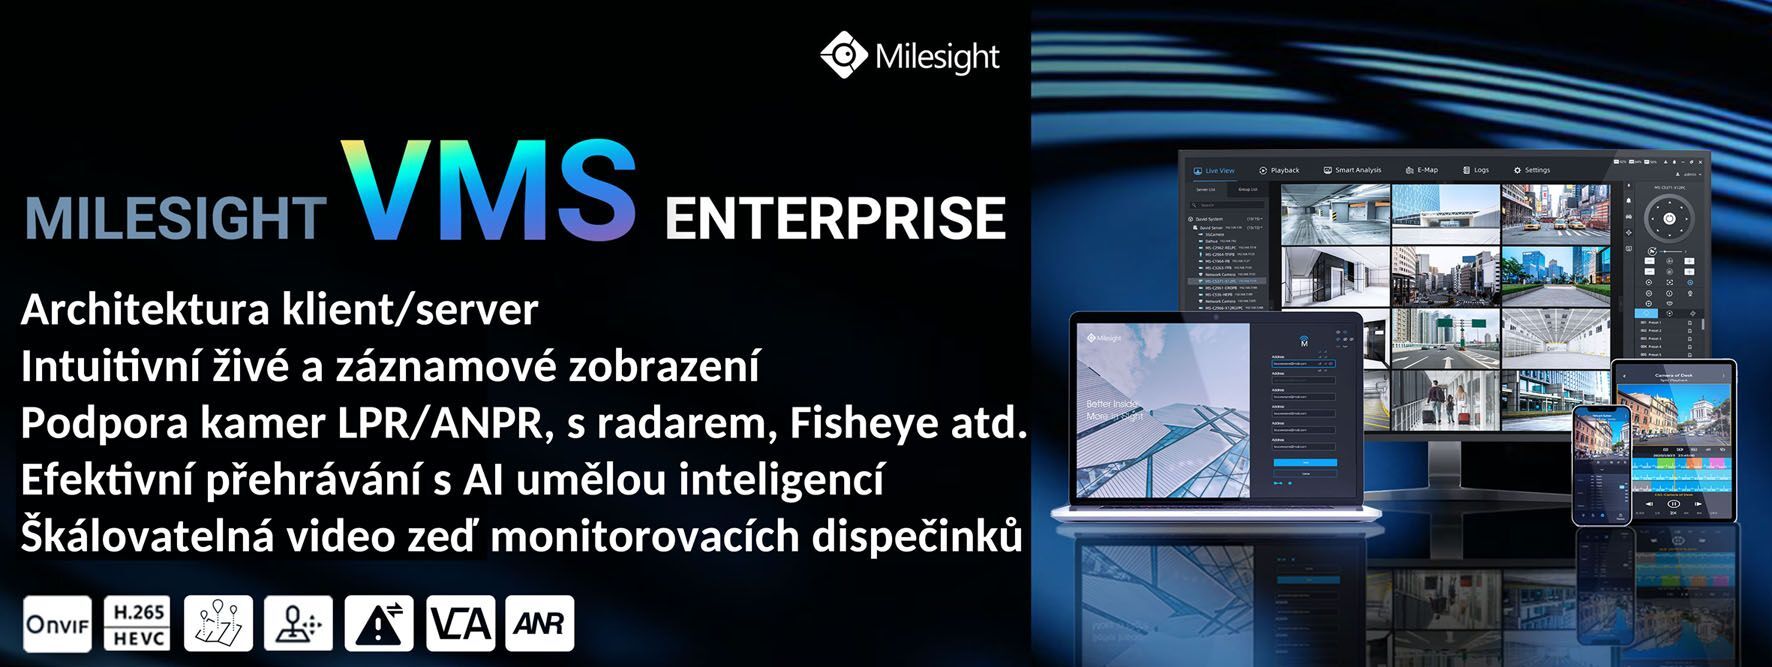 MS-MC-64CH Software VMS Enterprise